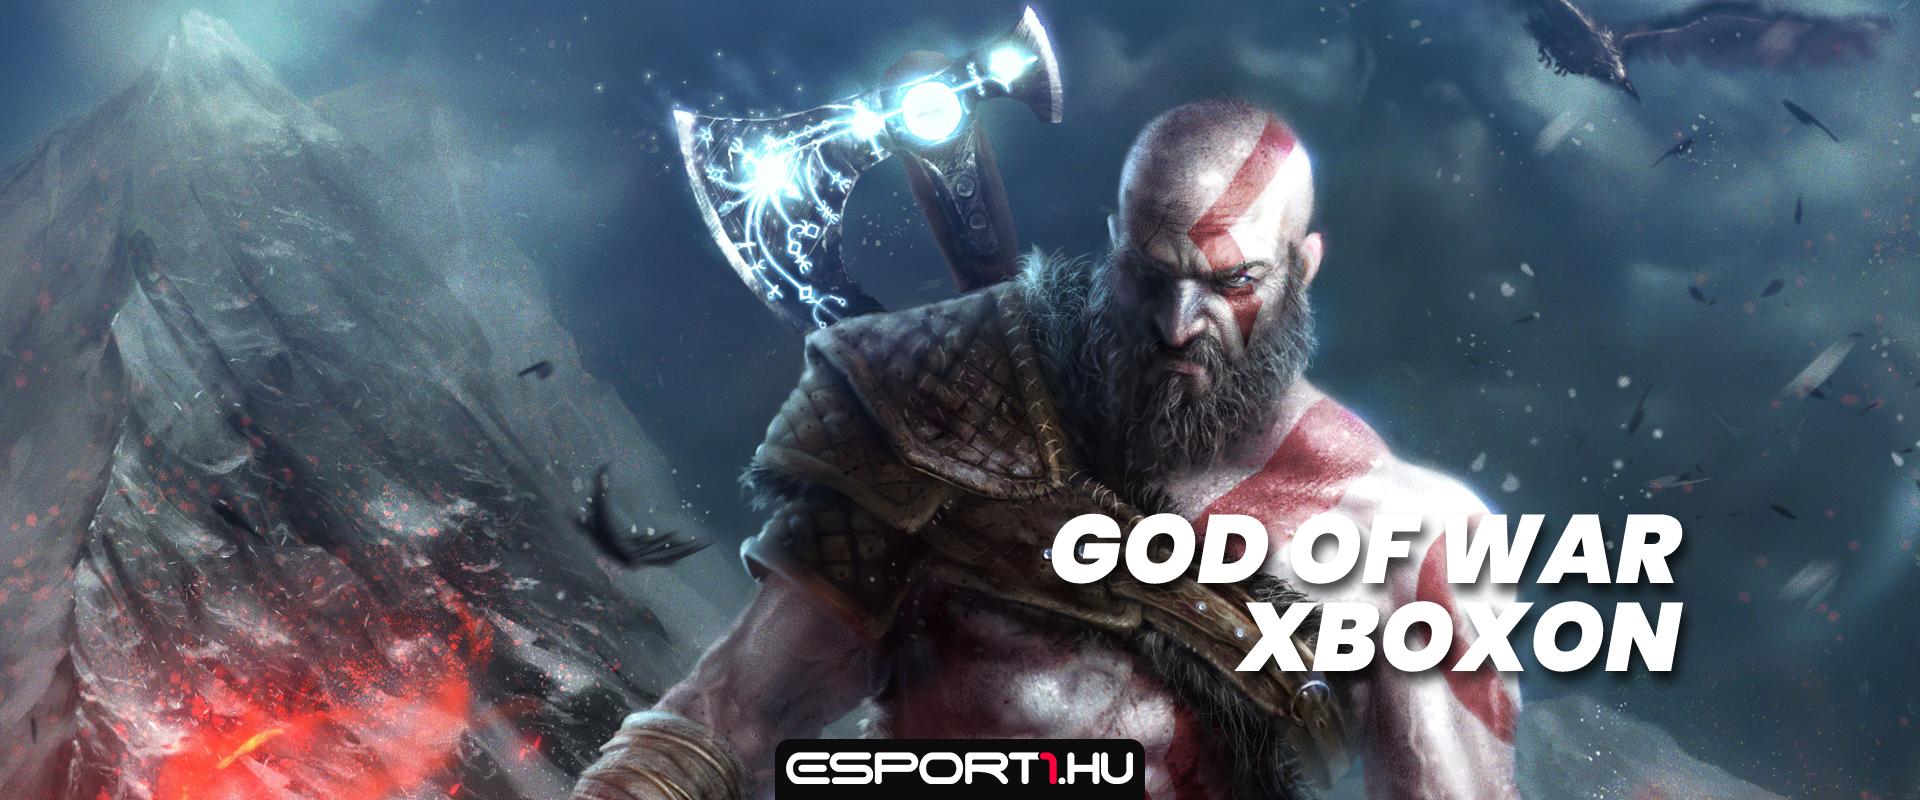 Így nézne ki a God of War Xboxon